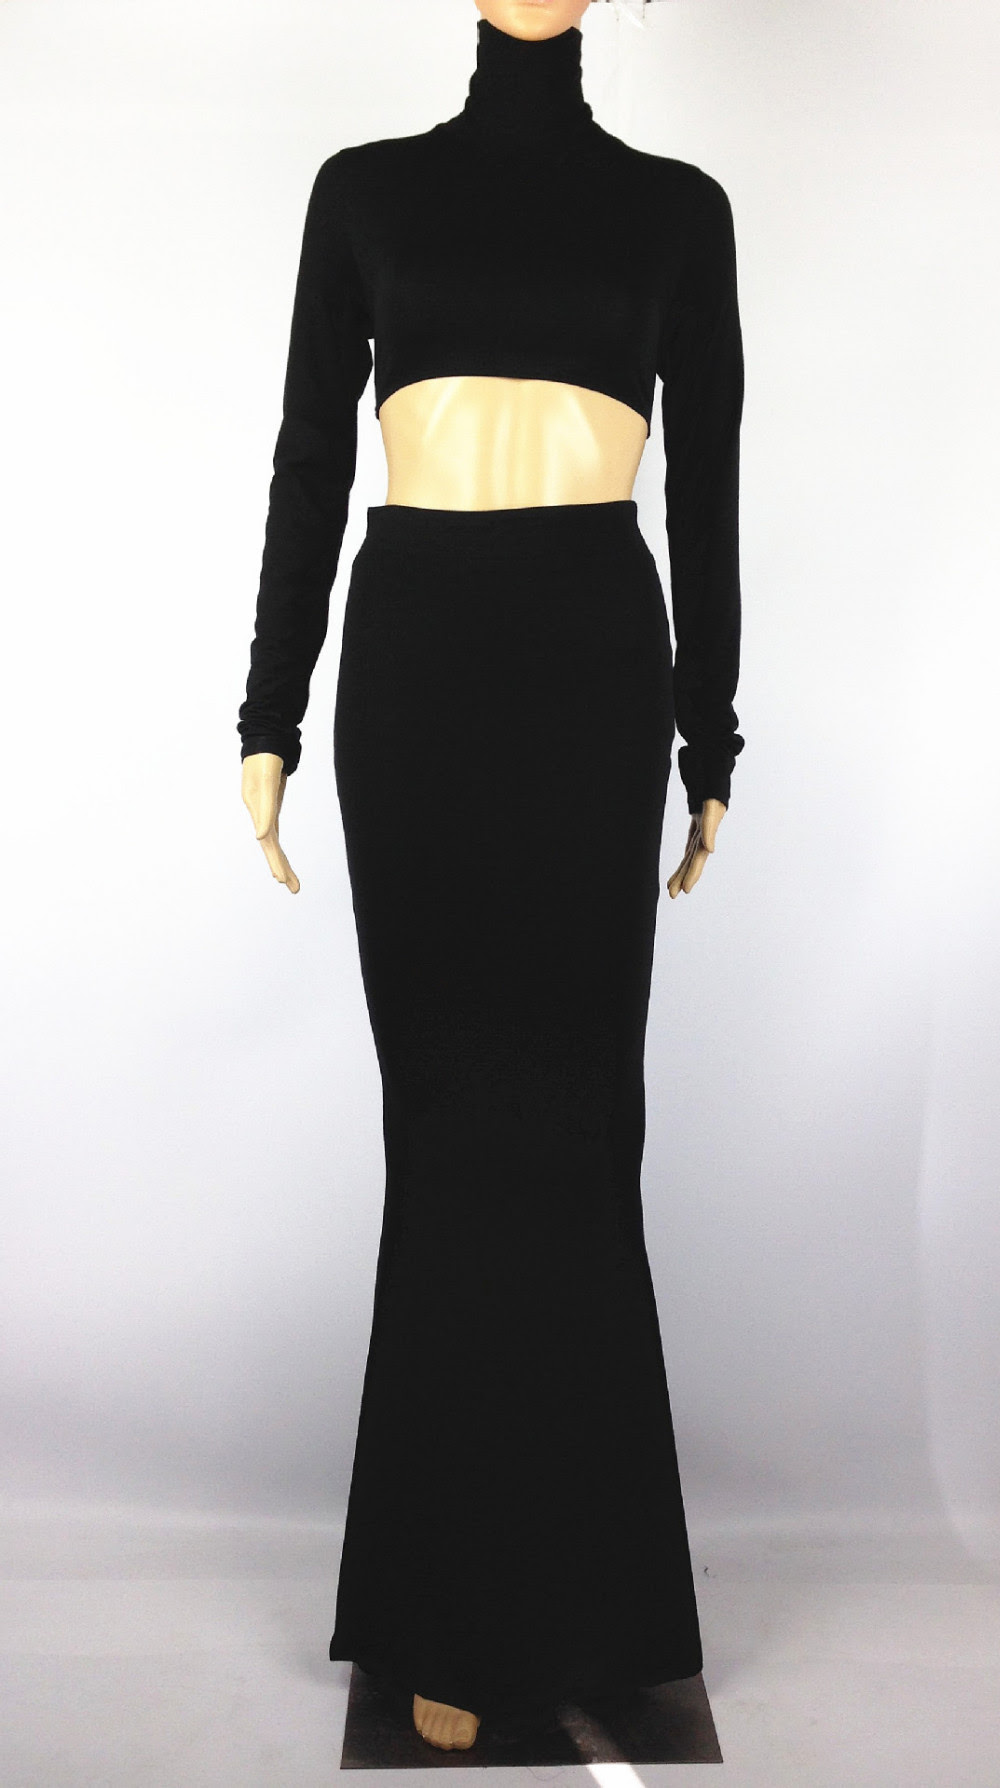 Plus dresses size bodycon black long tops boutique